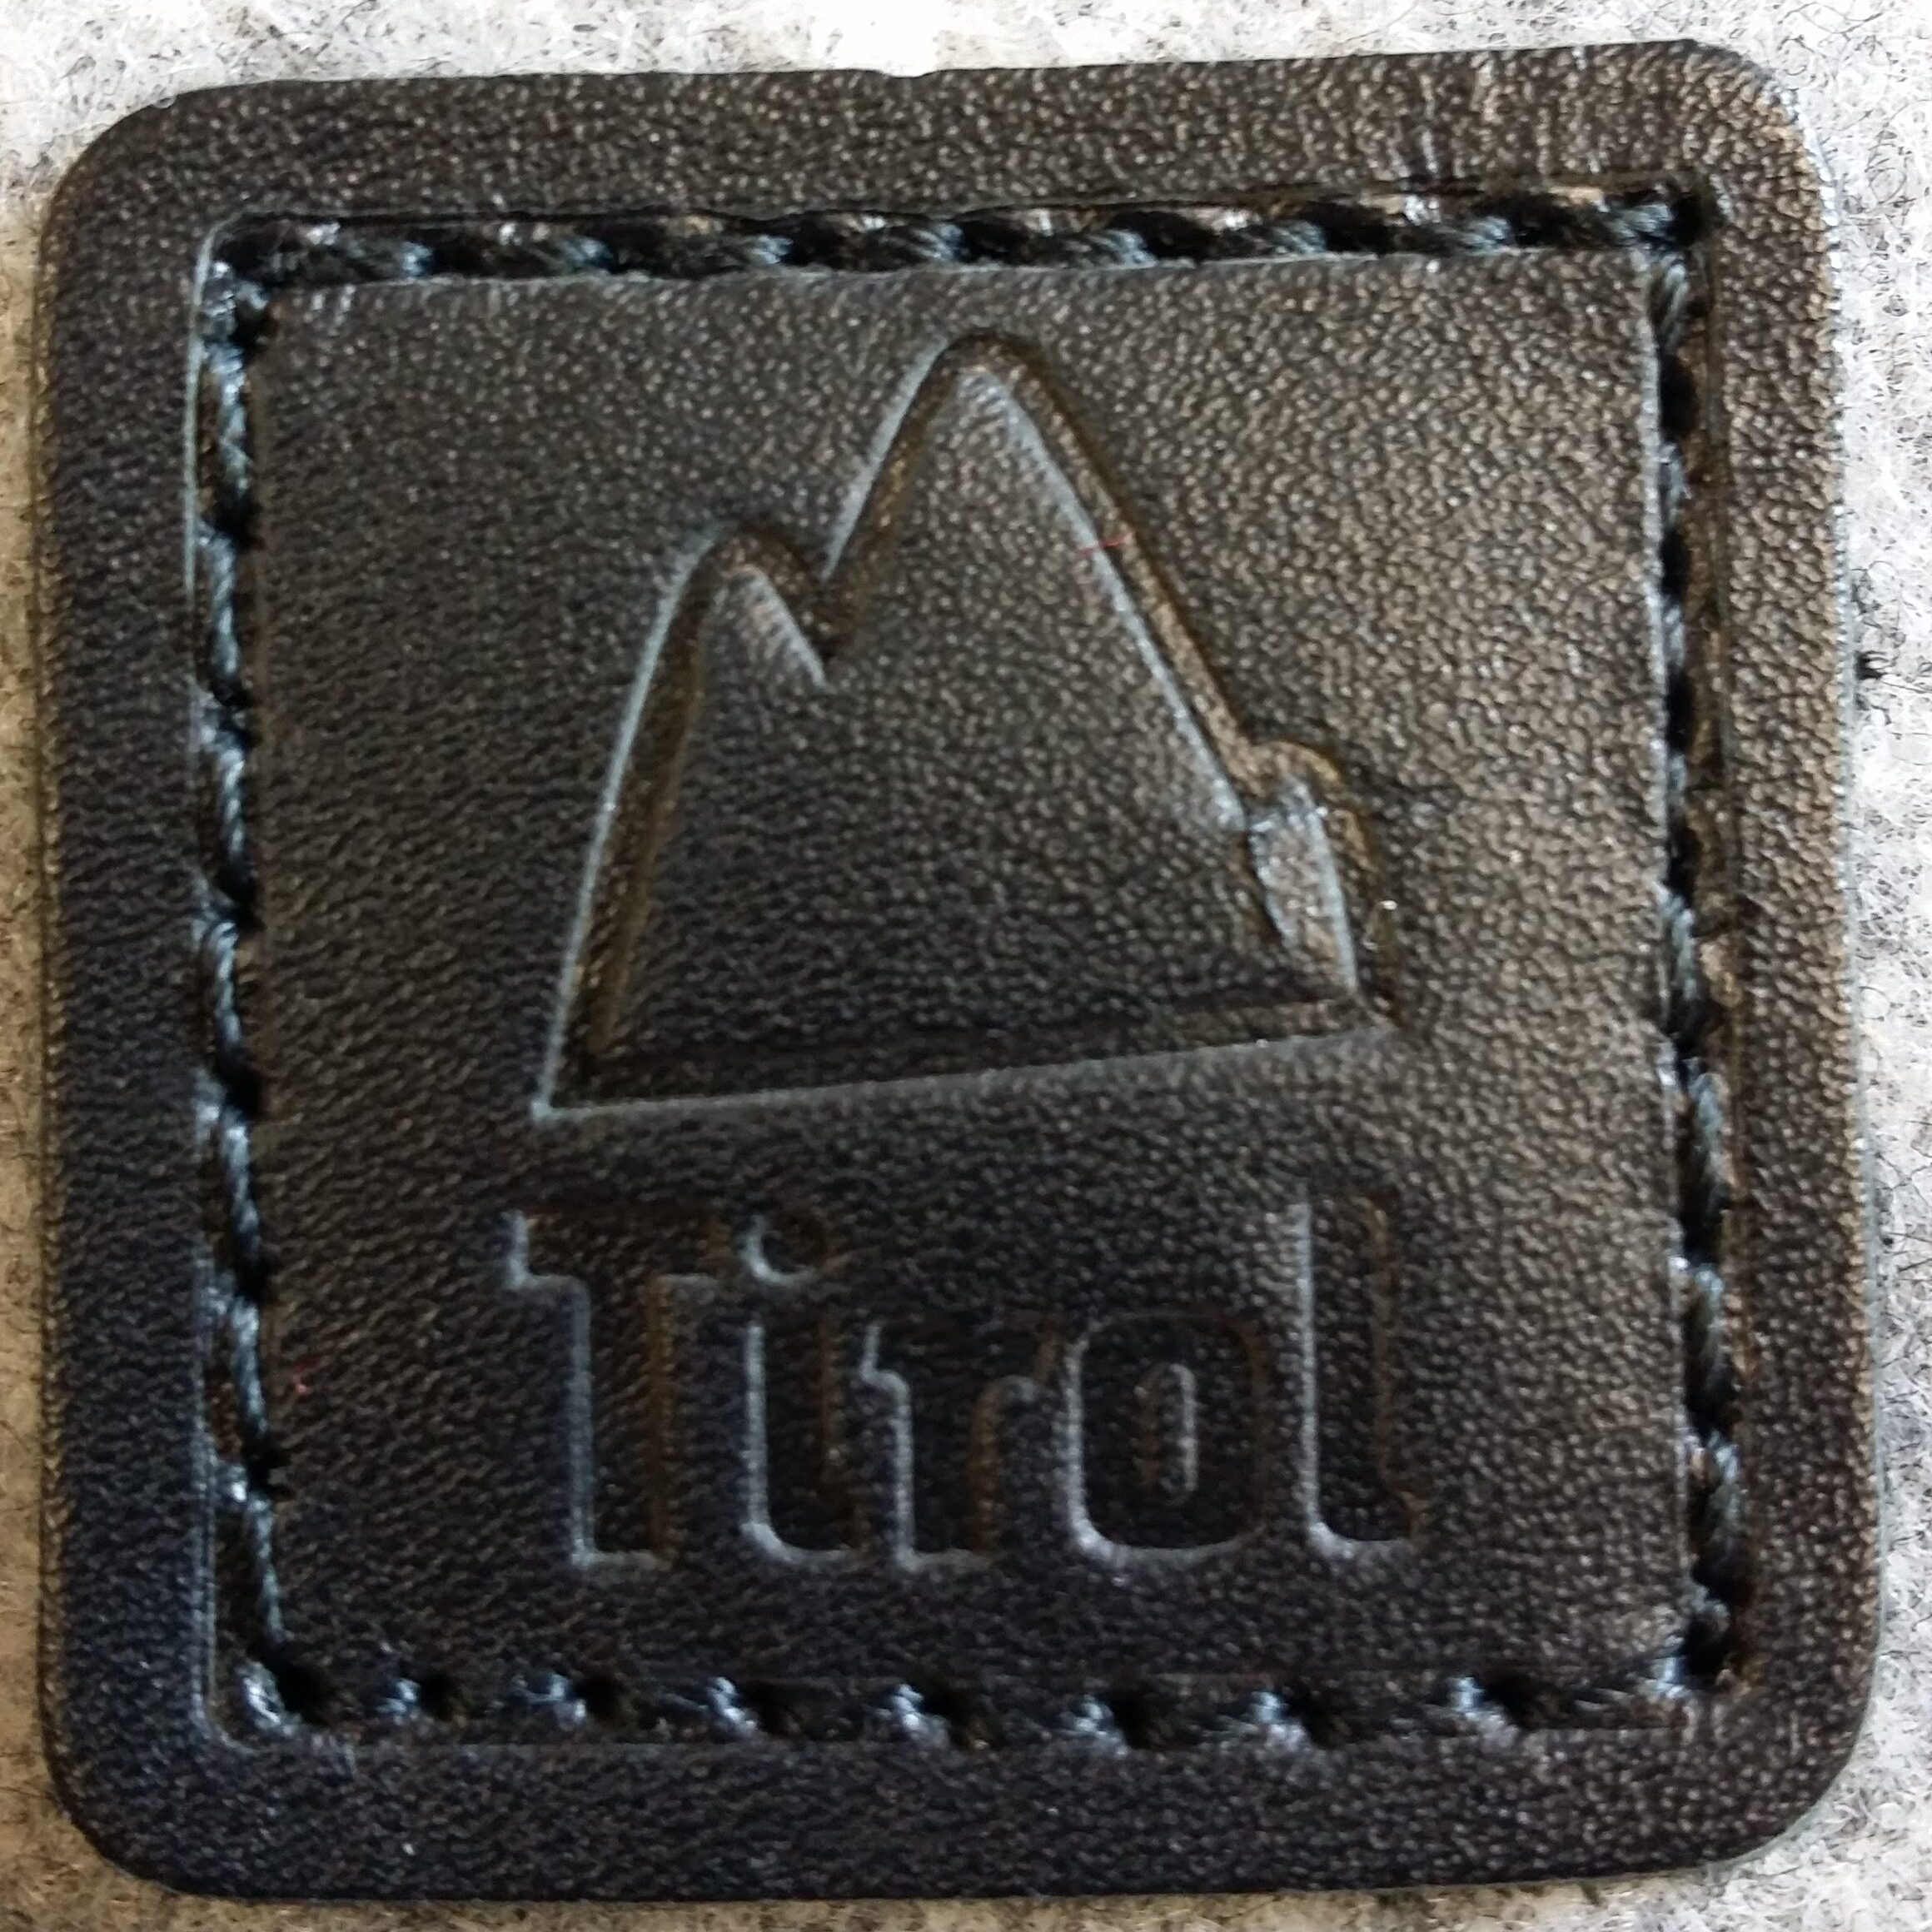 Logobranding auf Leder mit Prägestempel von Taschenfabrikantin extra angefertig